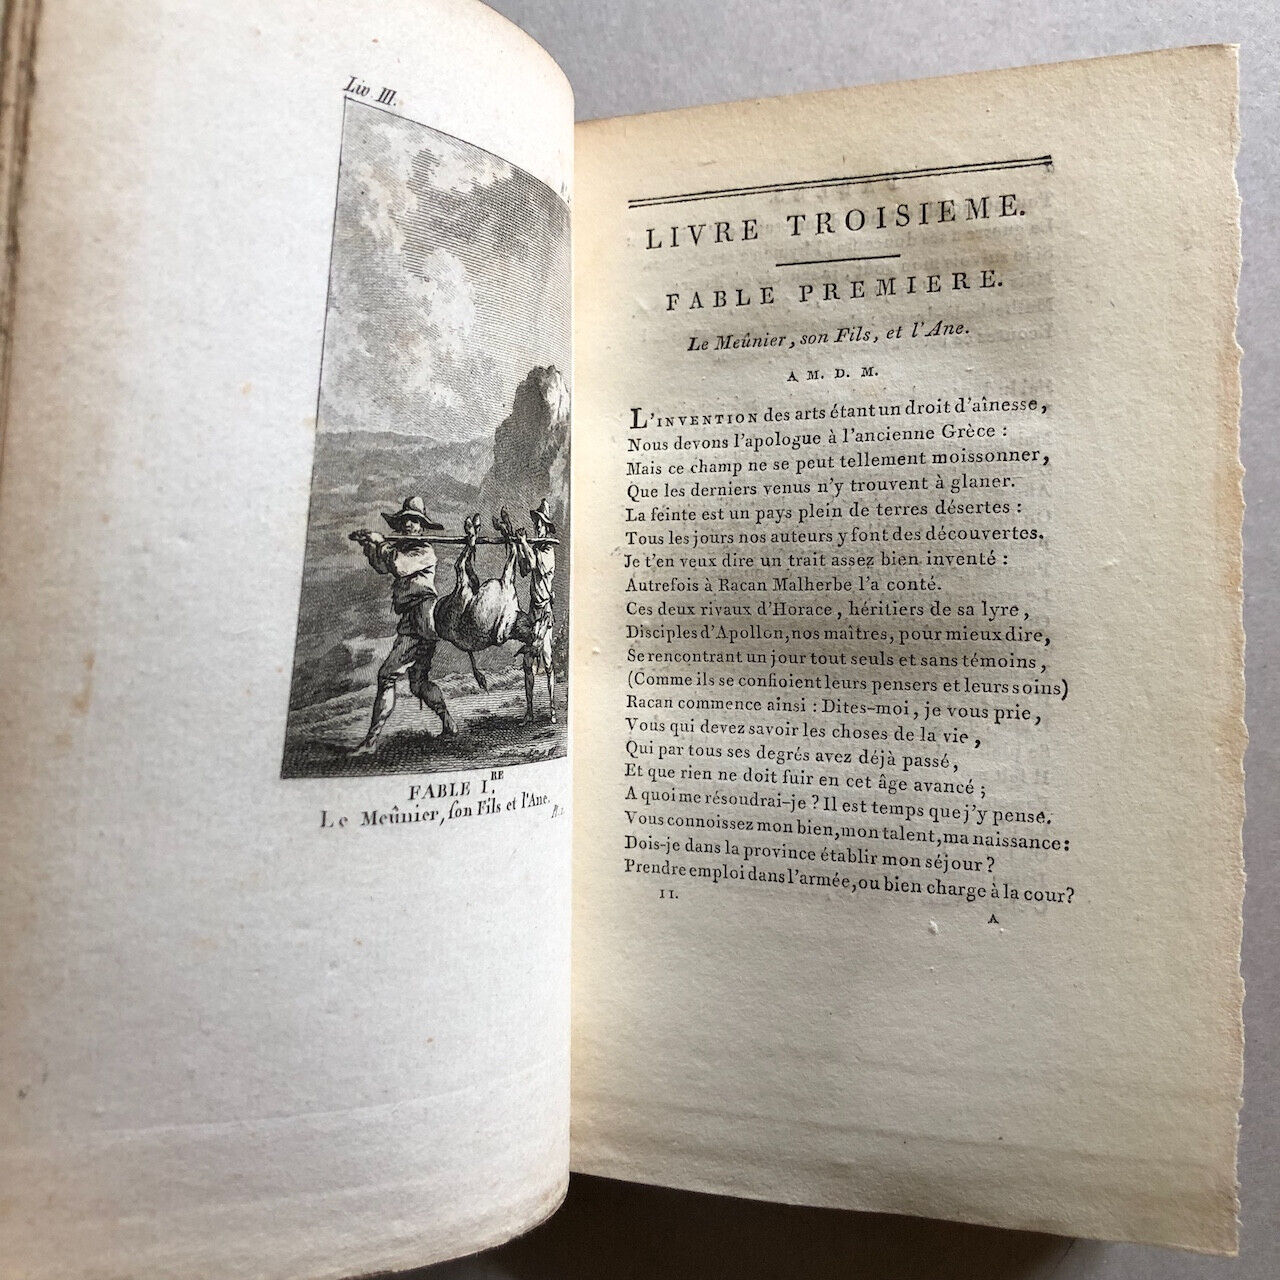 Jean de La Fontaine — Fables — 6 vol. - 275 pl. grav. — Bossange — an IV (1796).